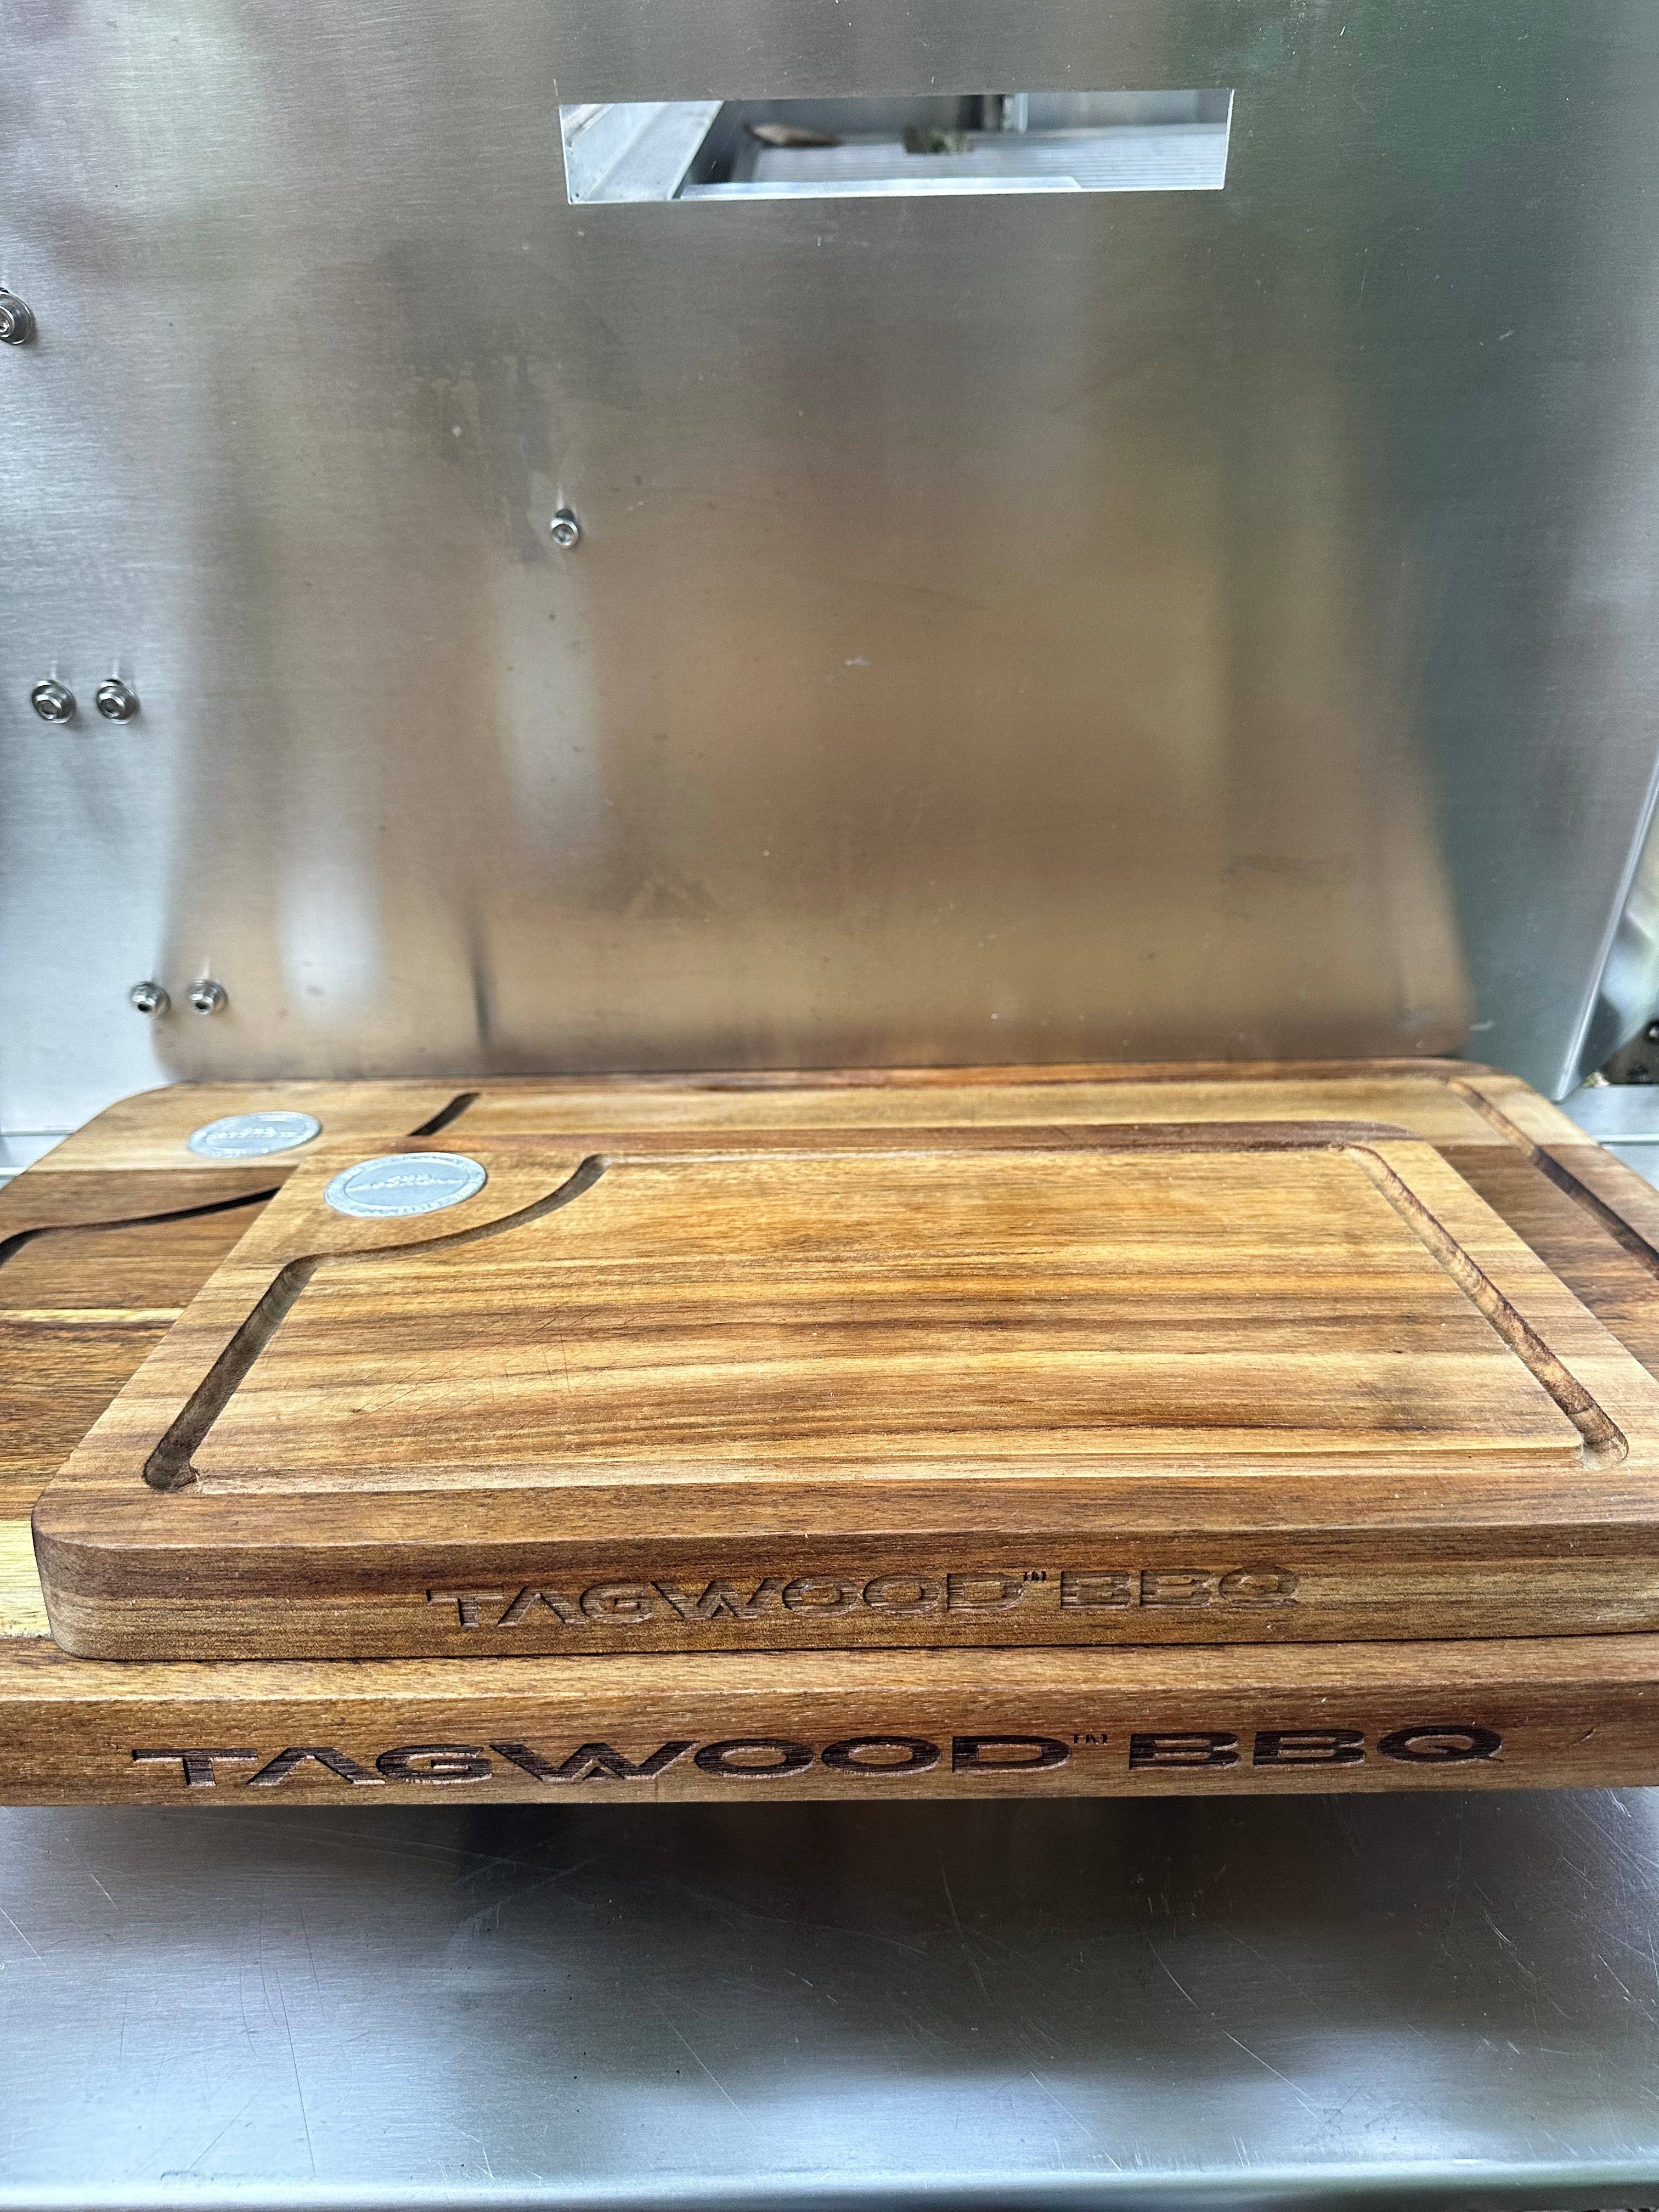 Tagwood BBQ Edge-Grain Cutting & Carving Board | TAWO05 -- - TAGWOOD BBQ STORES